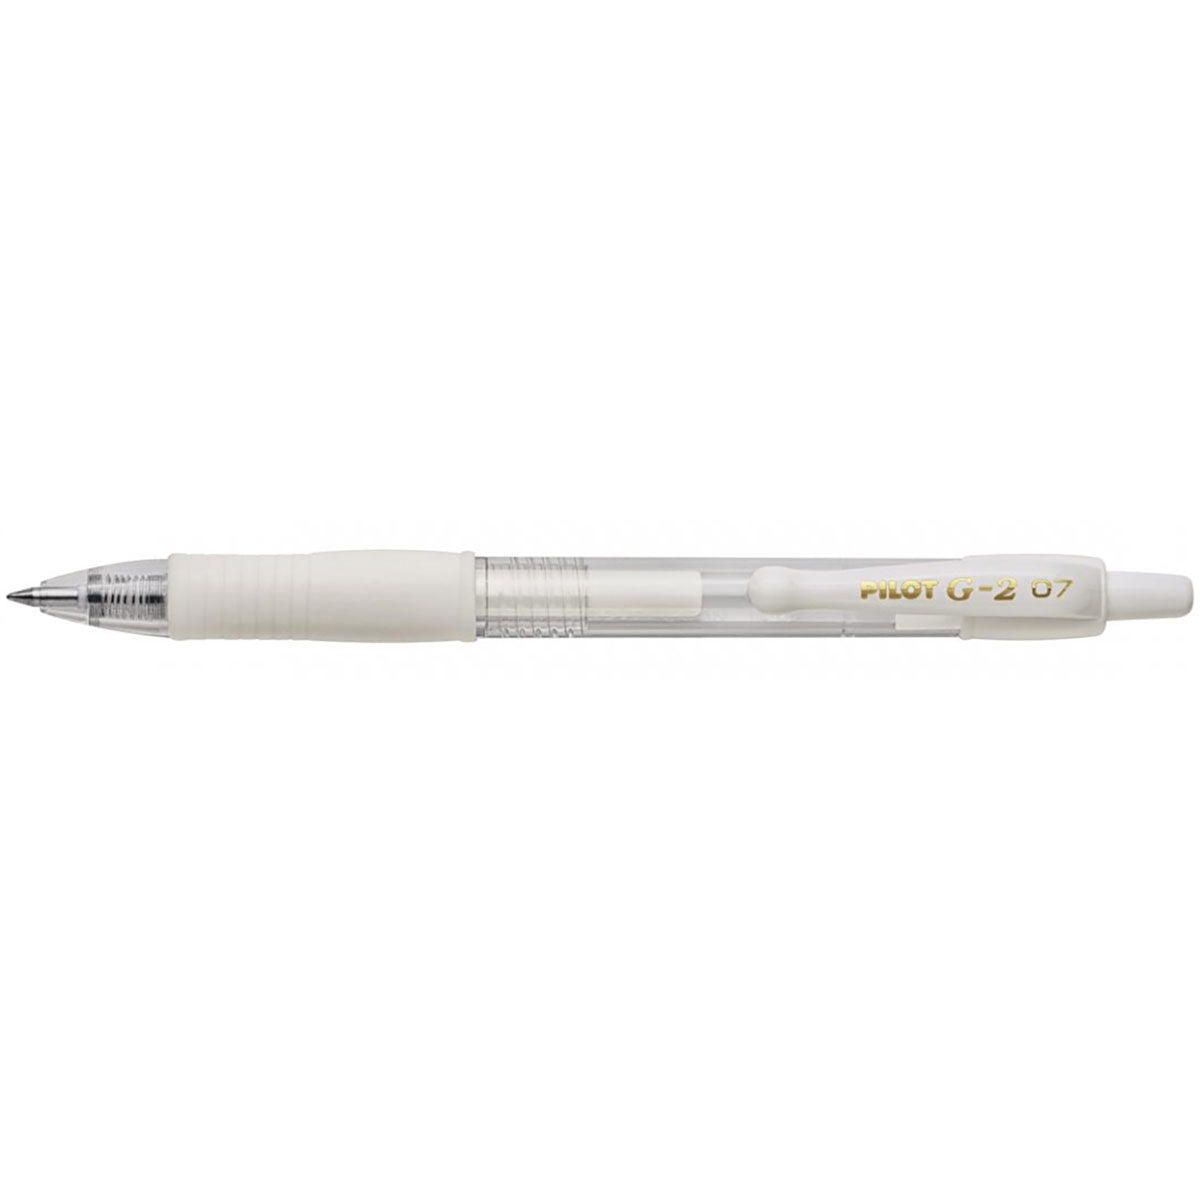 7 Pastel Gel Pens, 0.7 Mm Medium Tip, Point Yasutomo, Japanese